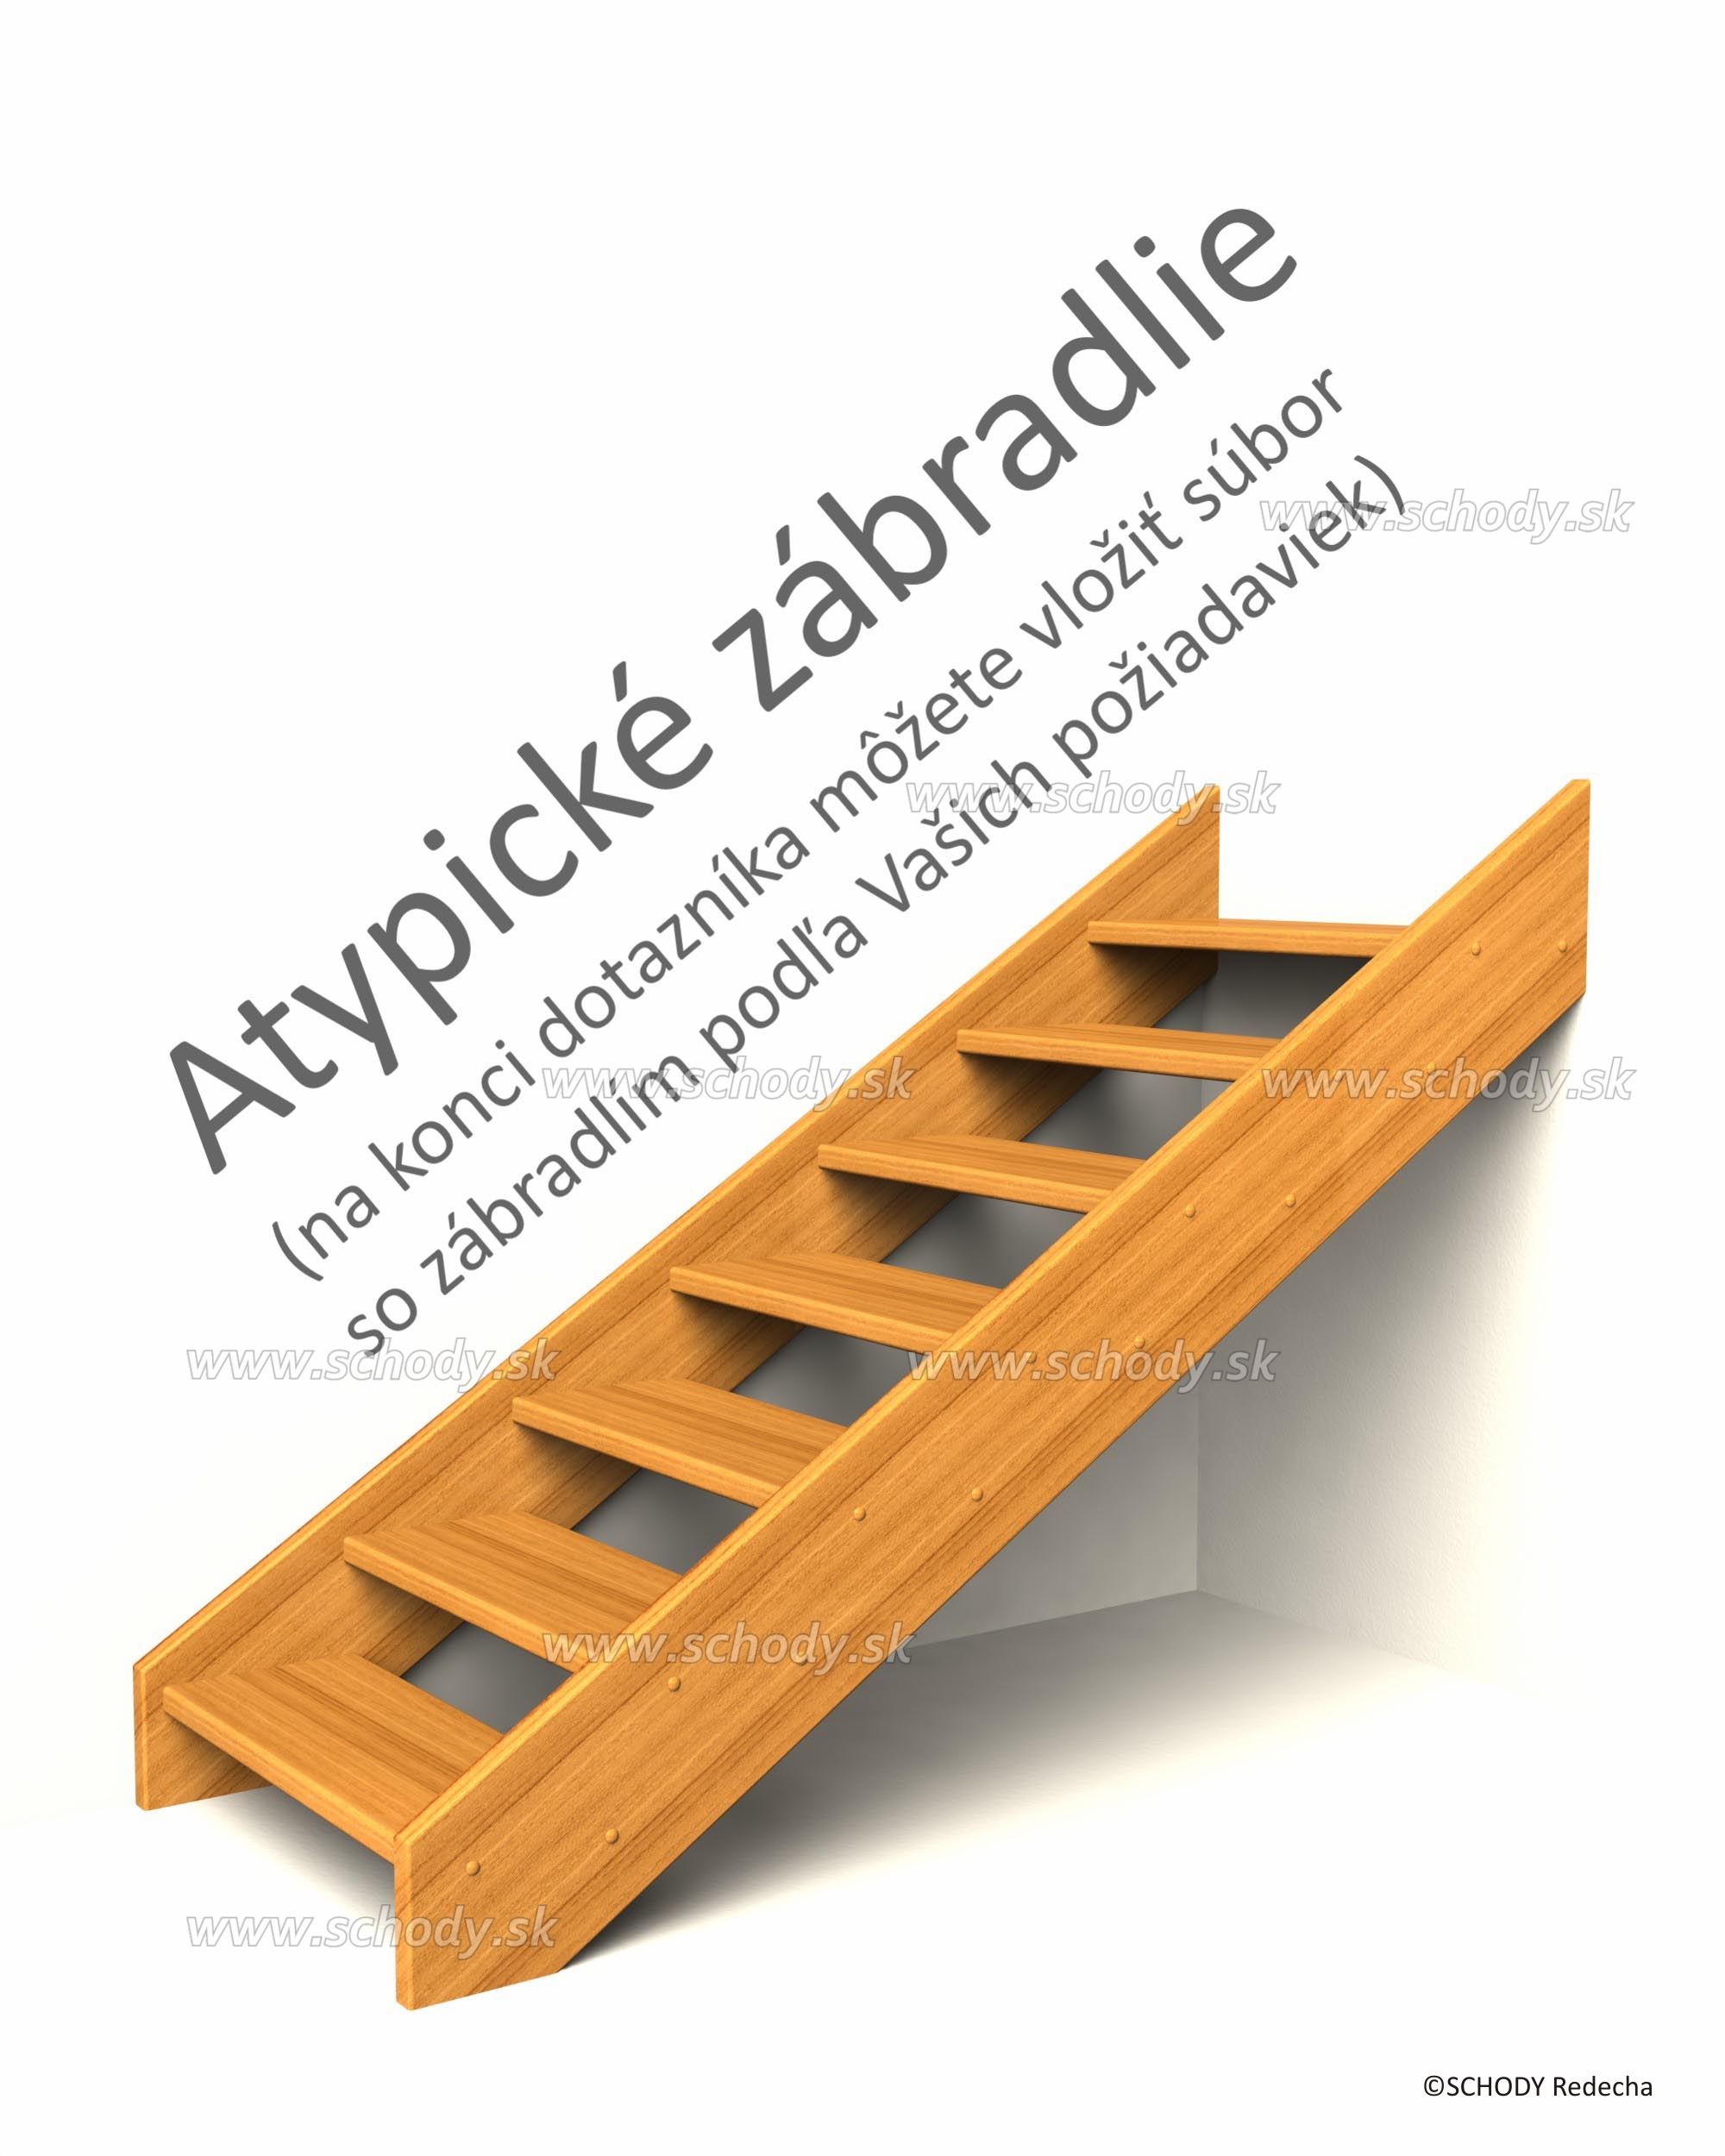 atypicke schody IA